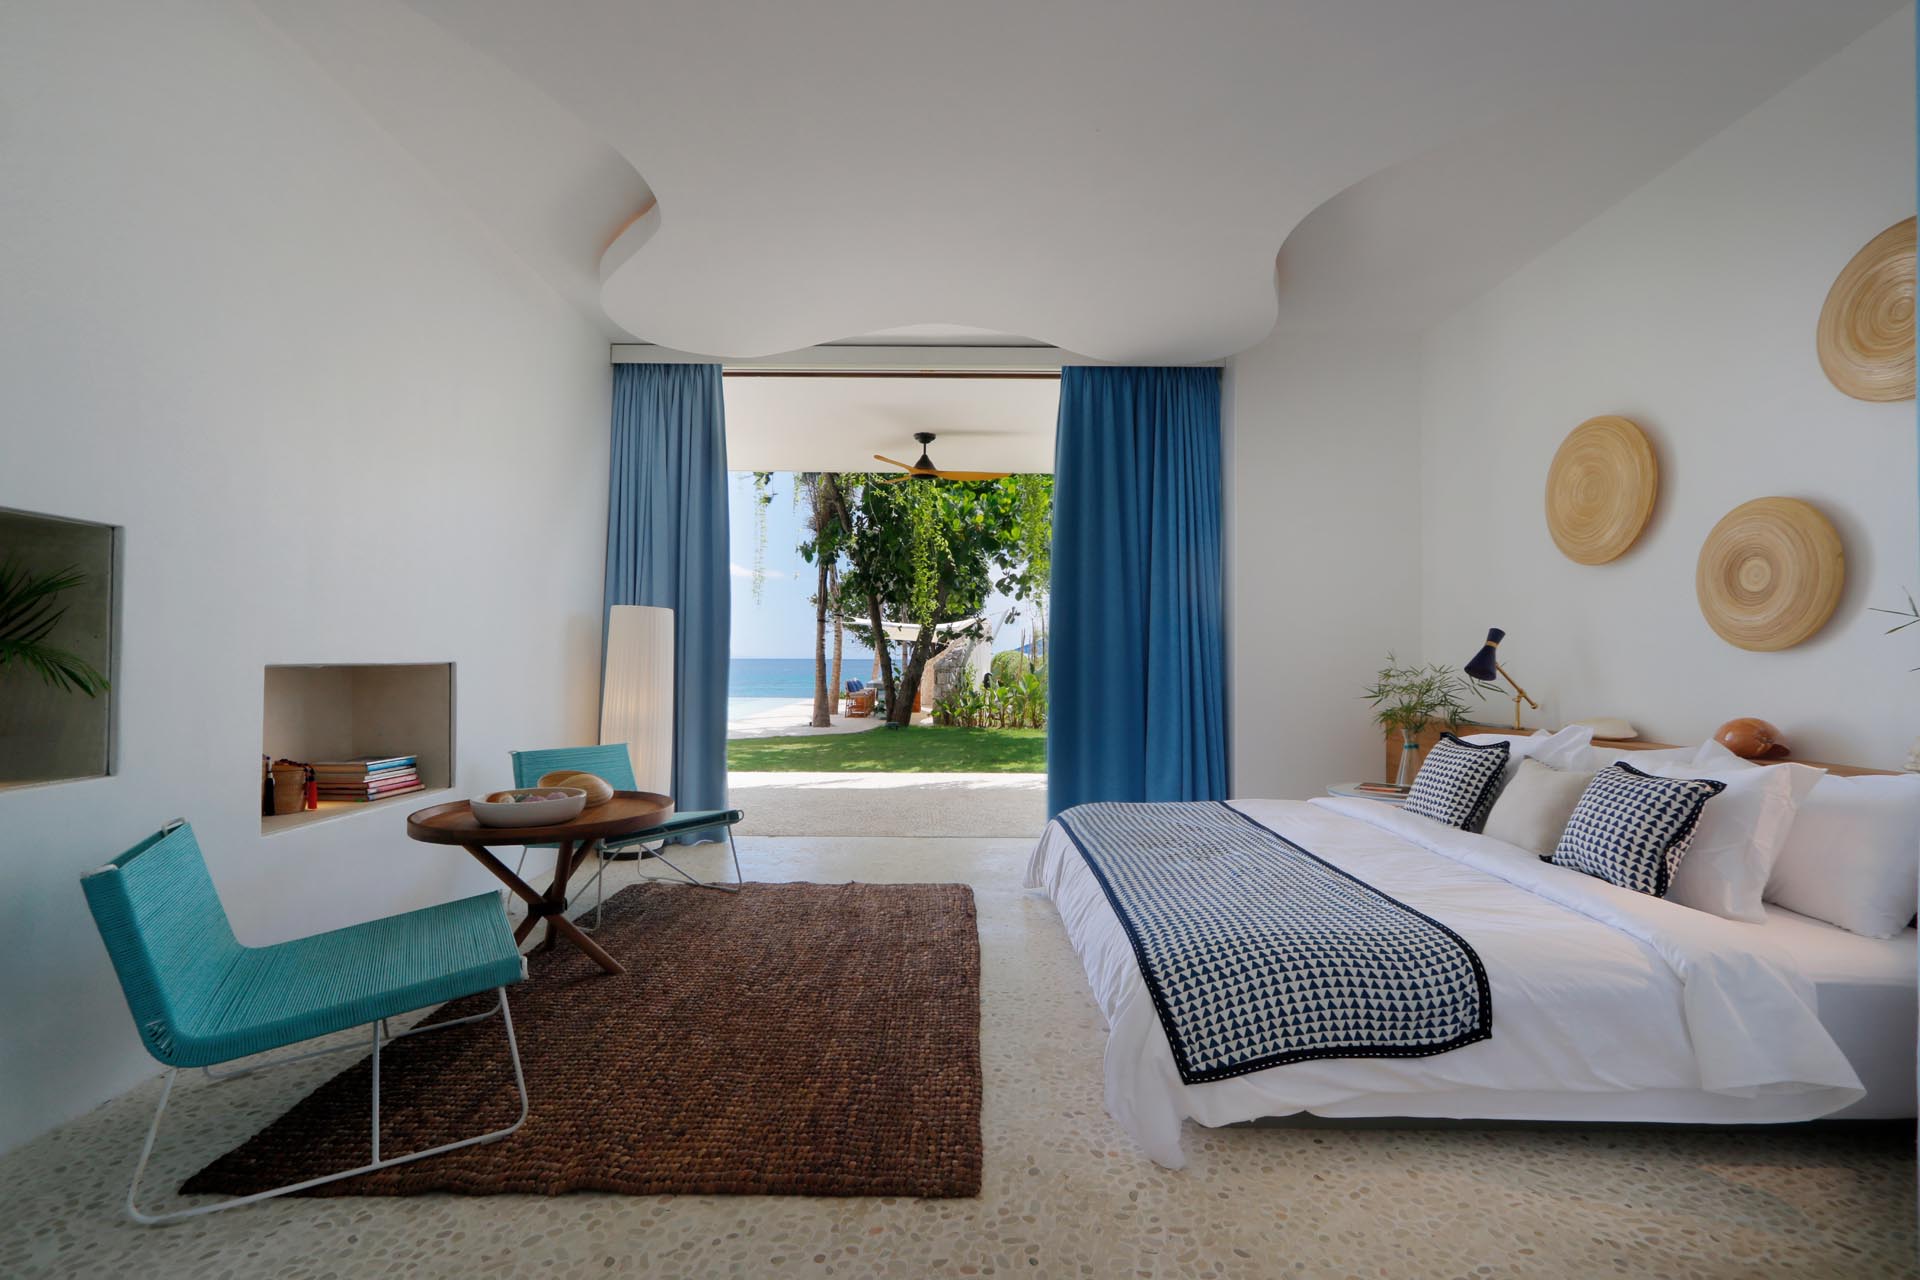 Phòng ngủ của ngôi nhà bãi biển hiện đại mở ra ngoài trời và có các điểm nhấn màu xanh lam.